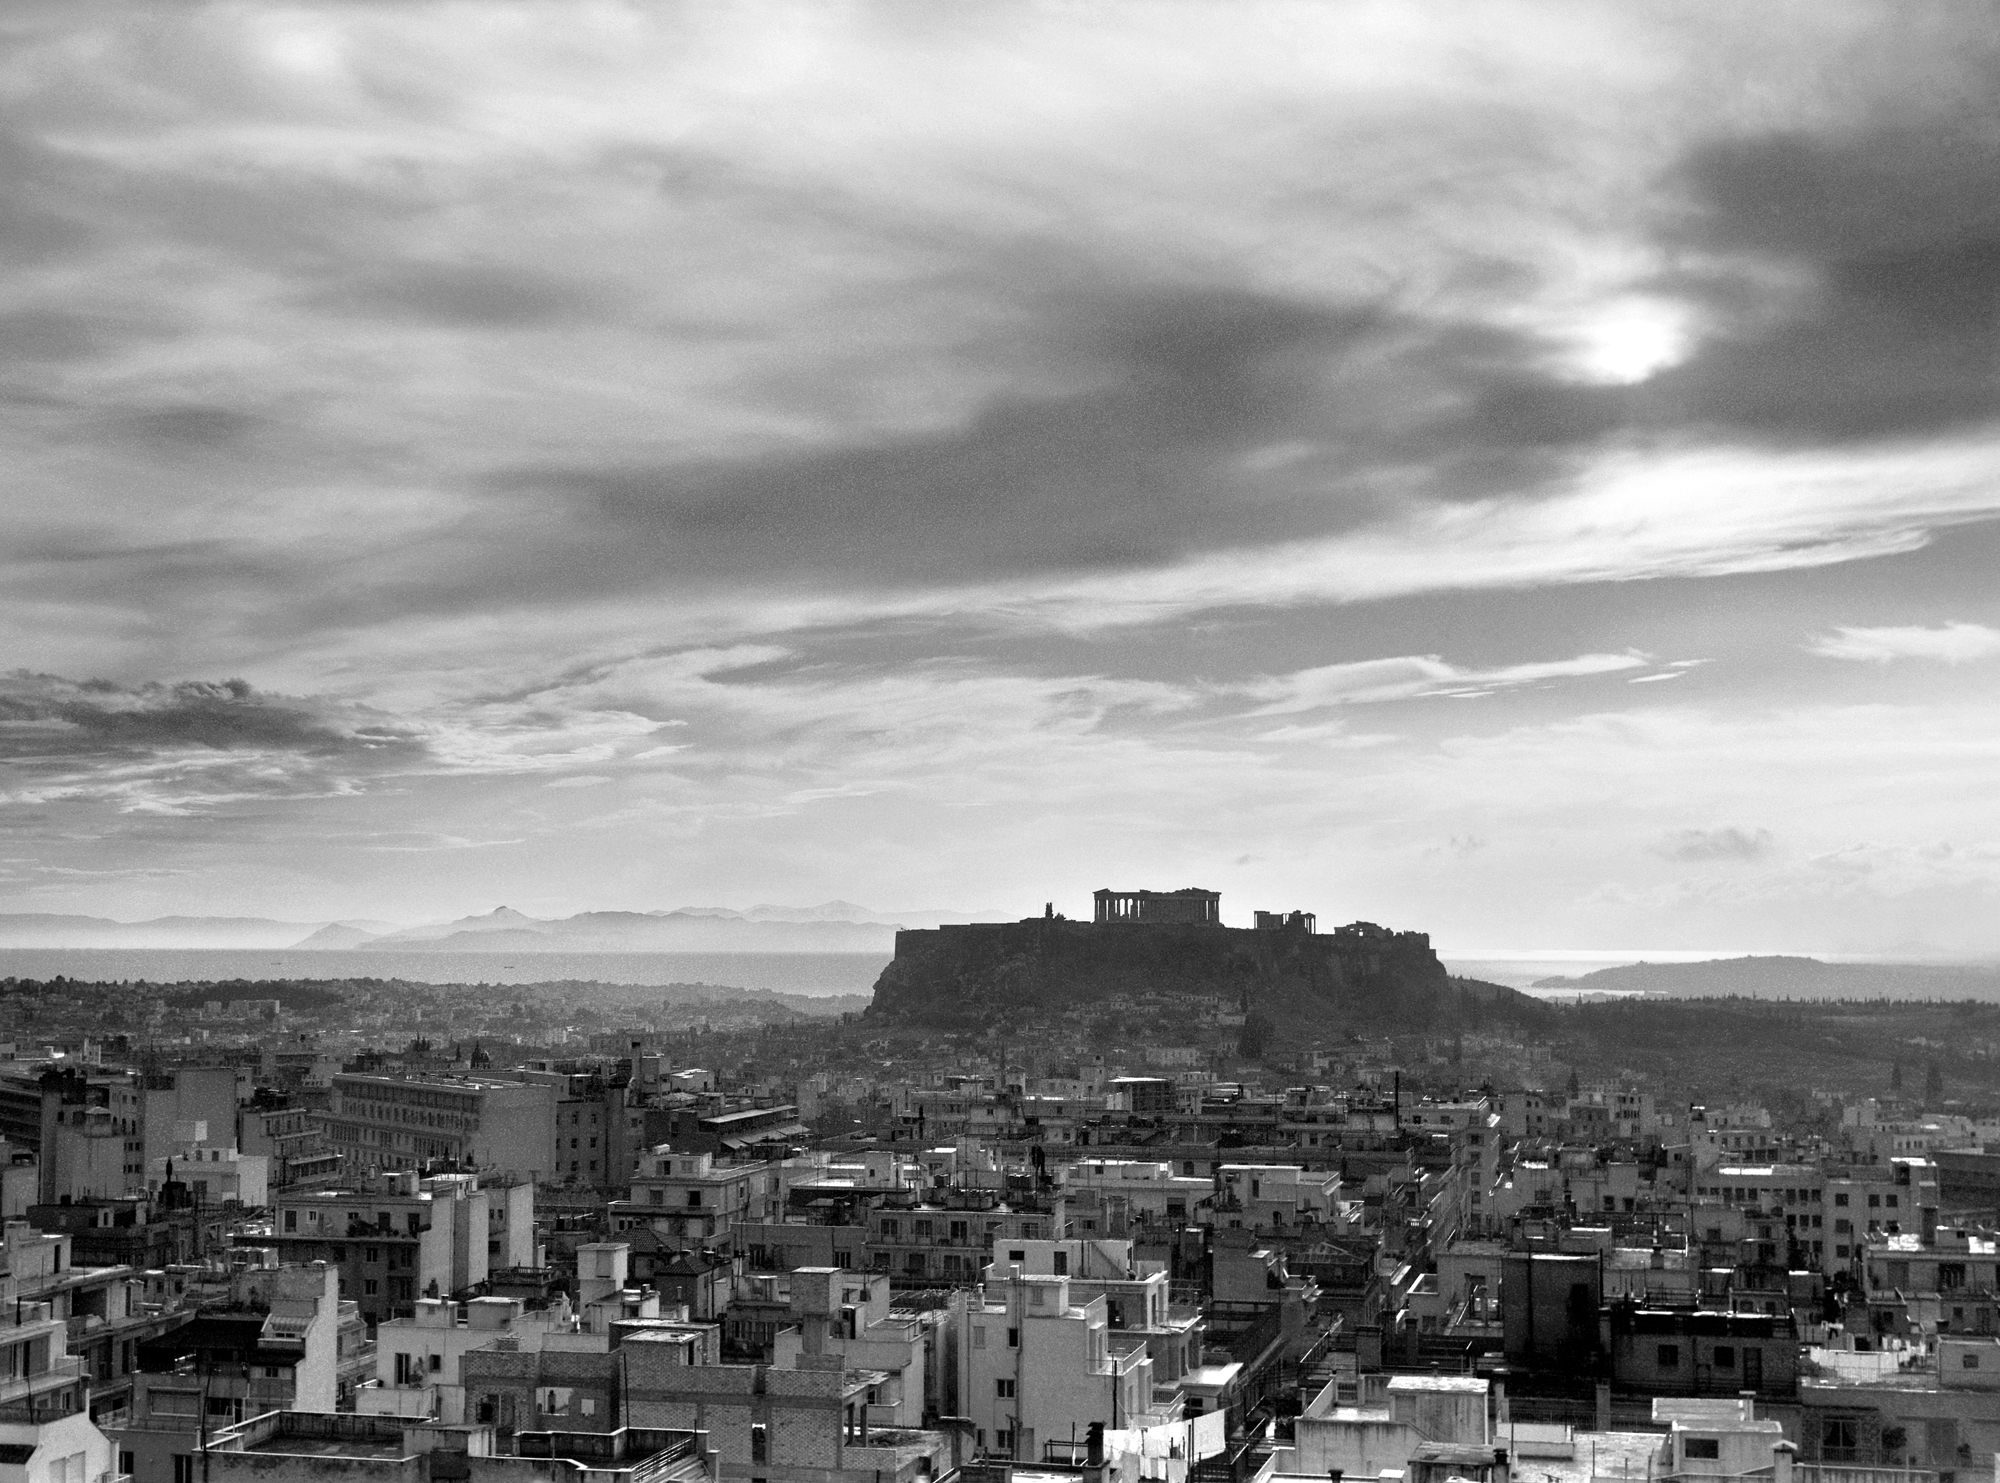 Ιωάννης Λάμπρος, Πανοραμική άποψη της Αθήνας με την Ακρόπολη στο βάθος, 1960